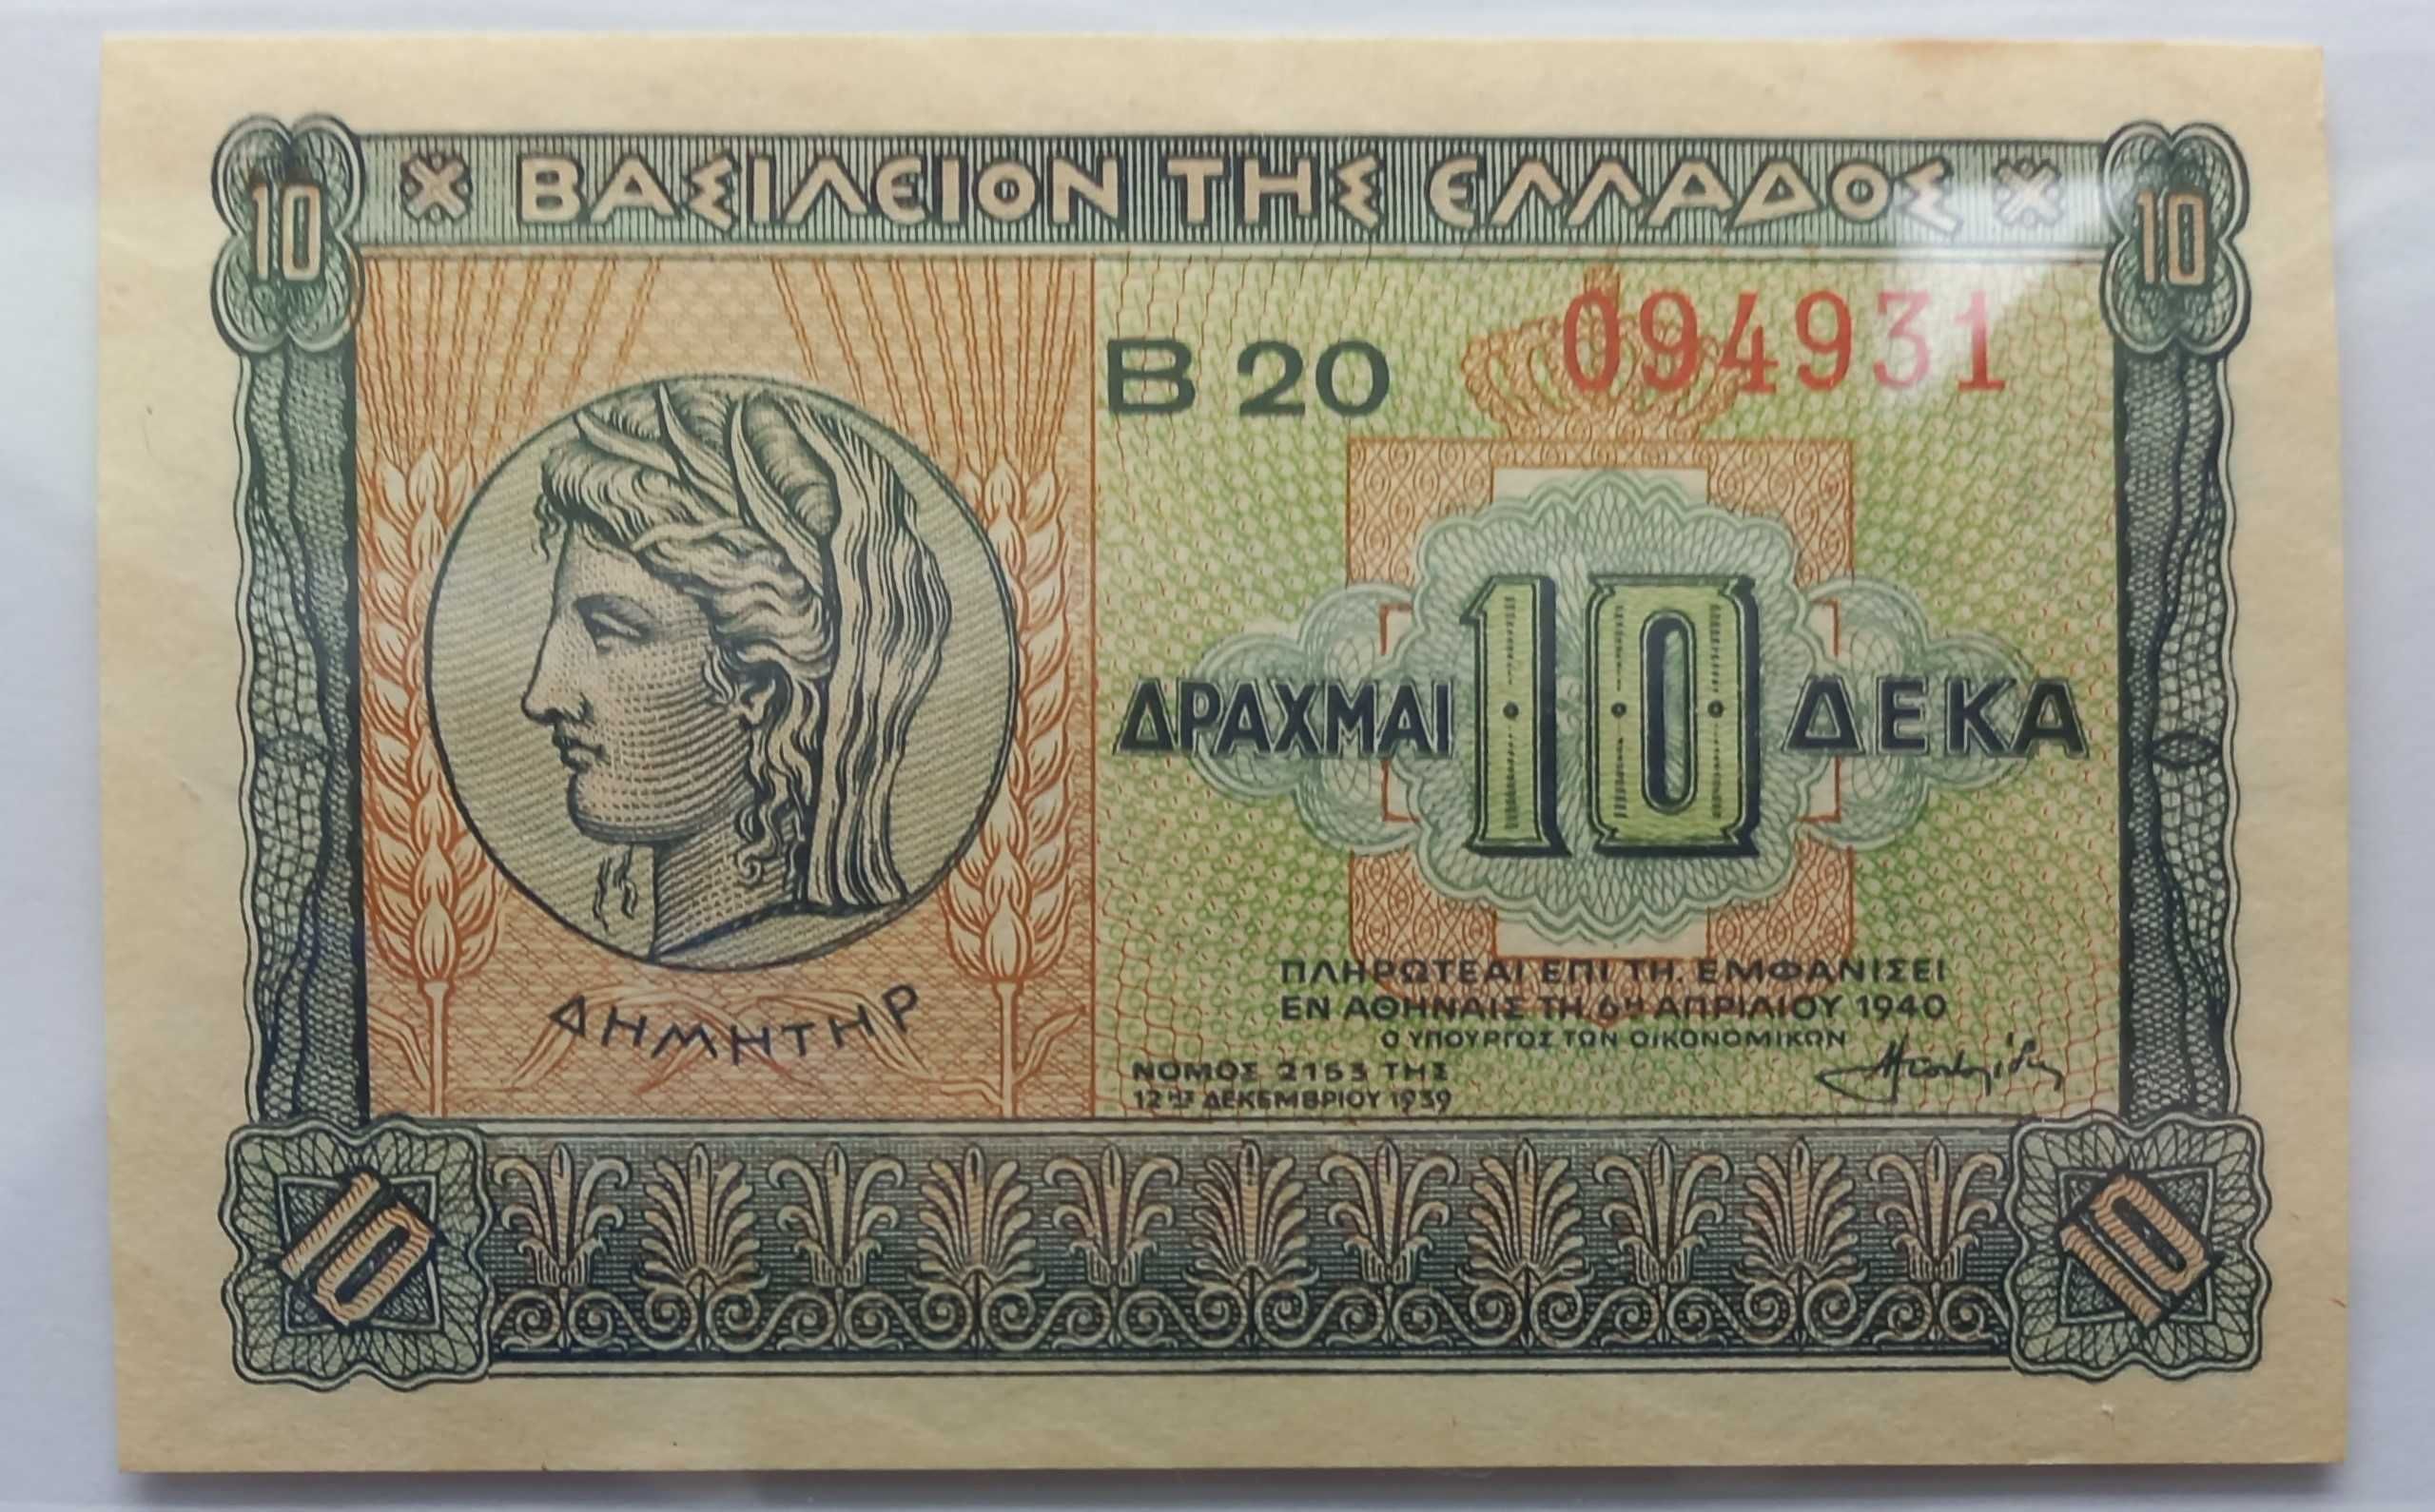 Banknot Grecja - 1940 rok.